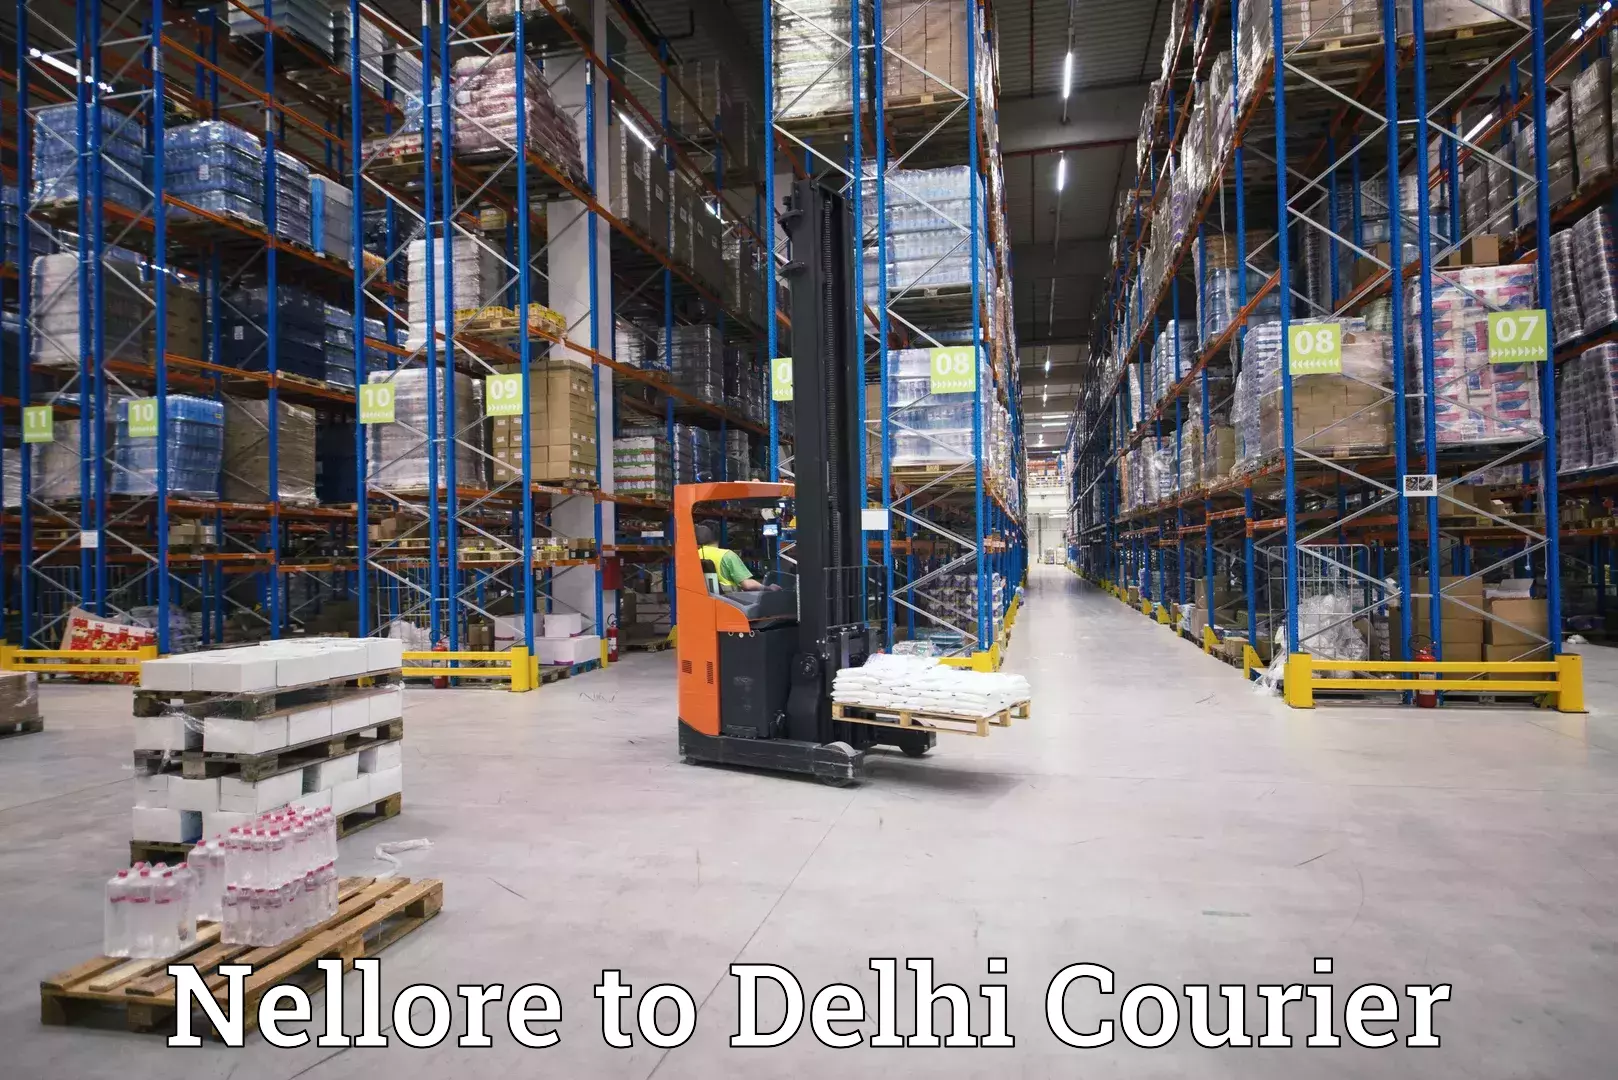 Corporate courier solutions Nellore to Jamia Hamdard New Delhi